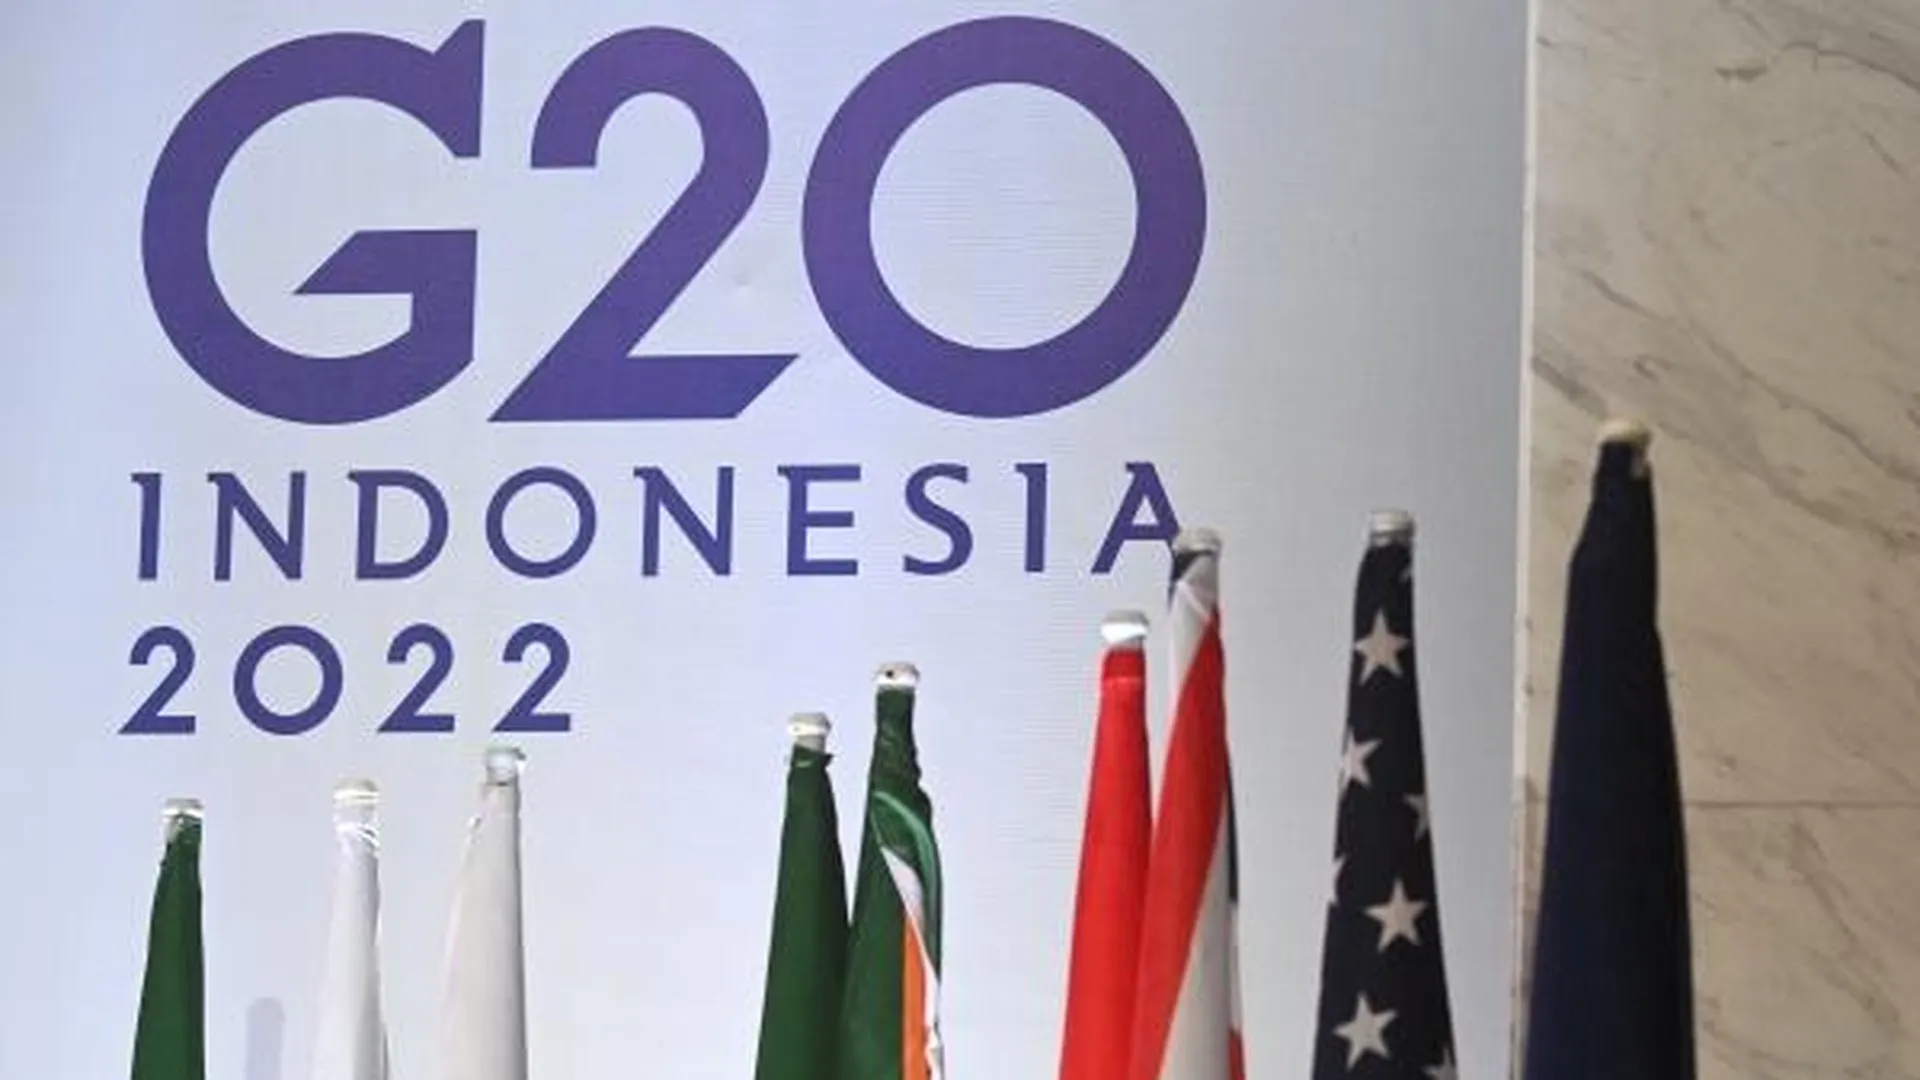 Представители G20 заявили о недопустимости применения ядерного оружия